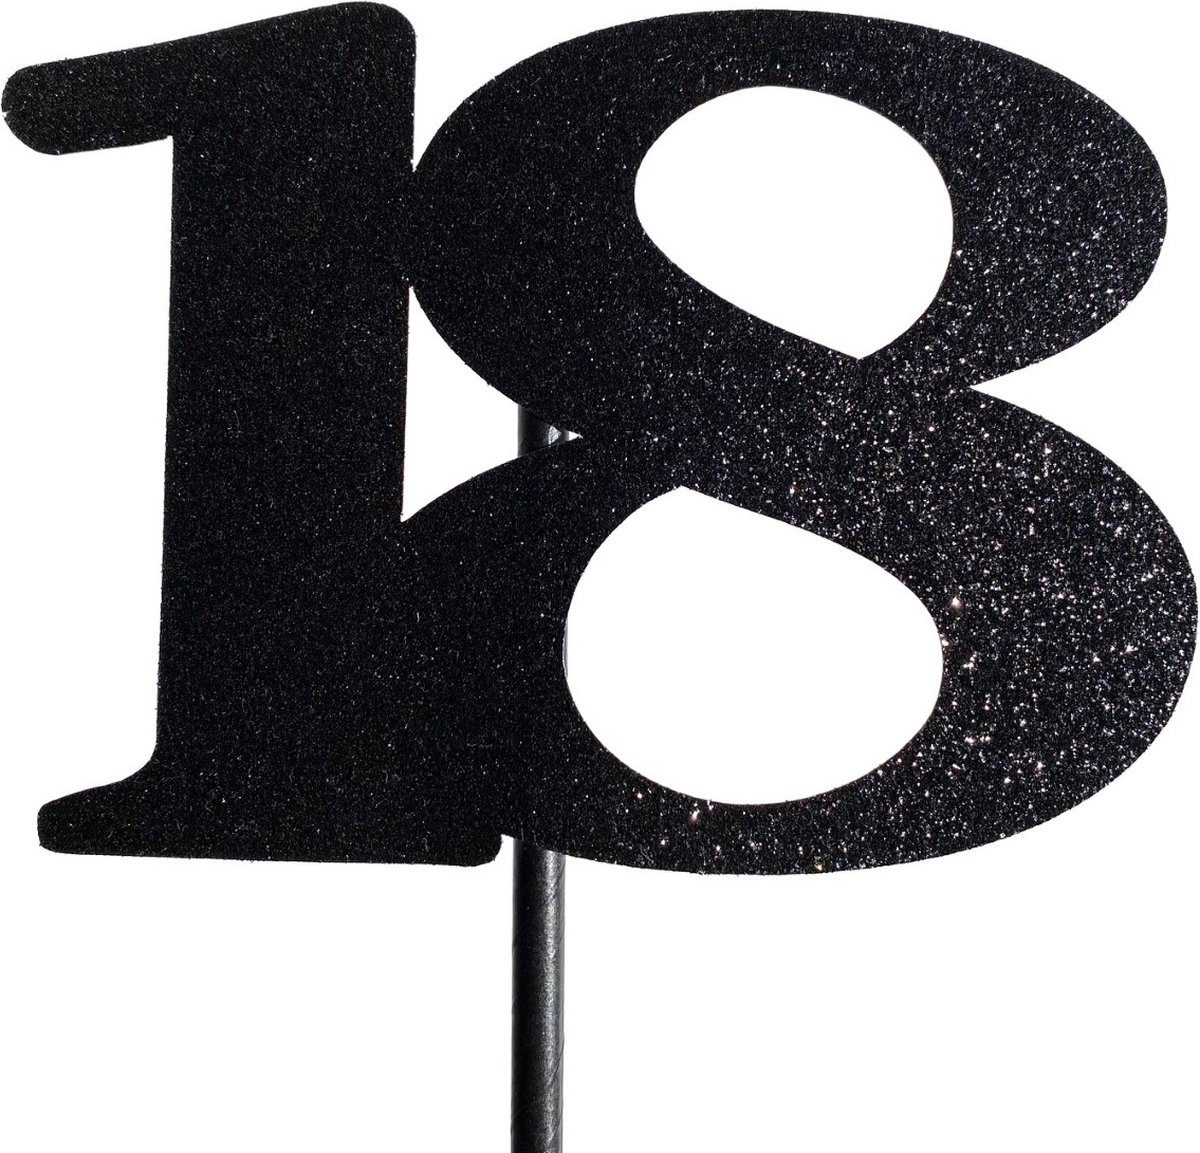 Taartdecoratie versiering| Taarttopper| Cake topper | Taartversiering| Verjaardag| Cijfers | 18 | Zwart glitter|14 cm| karton